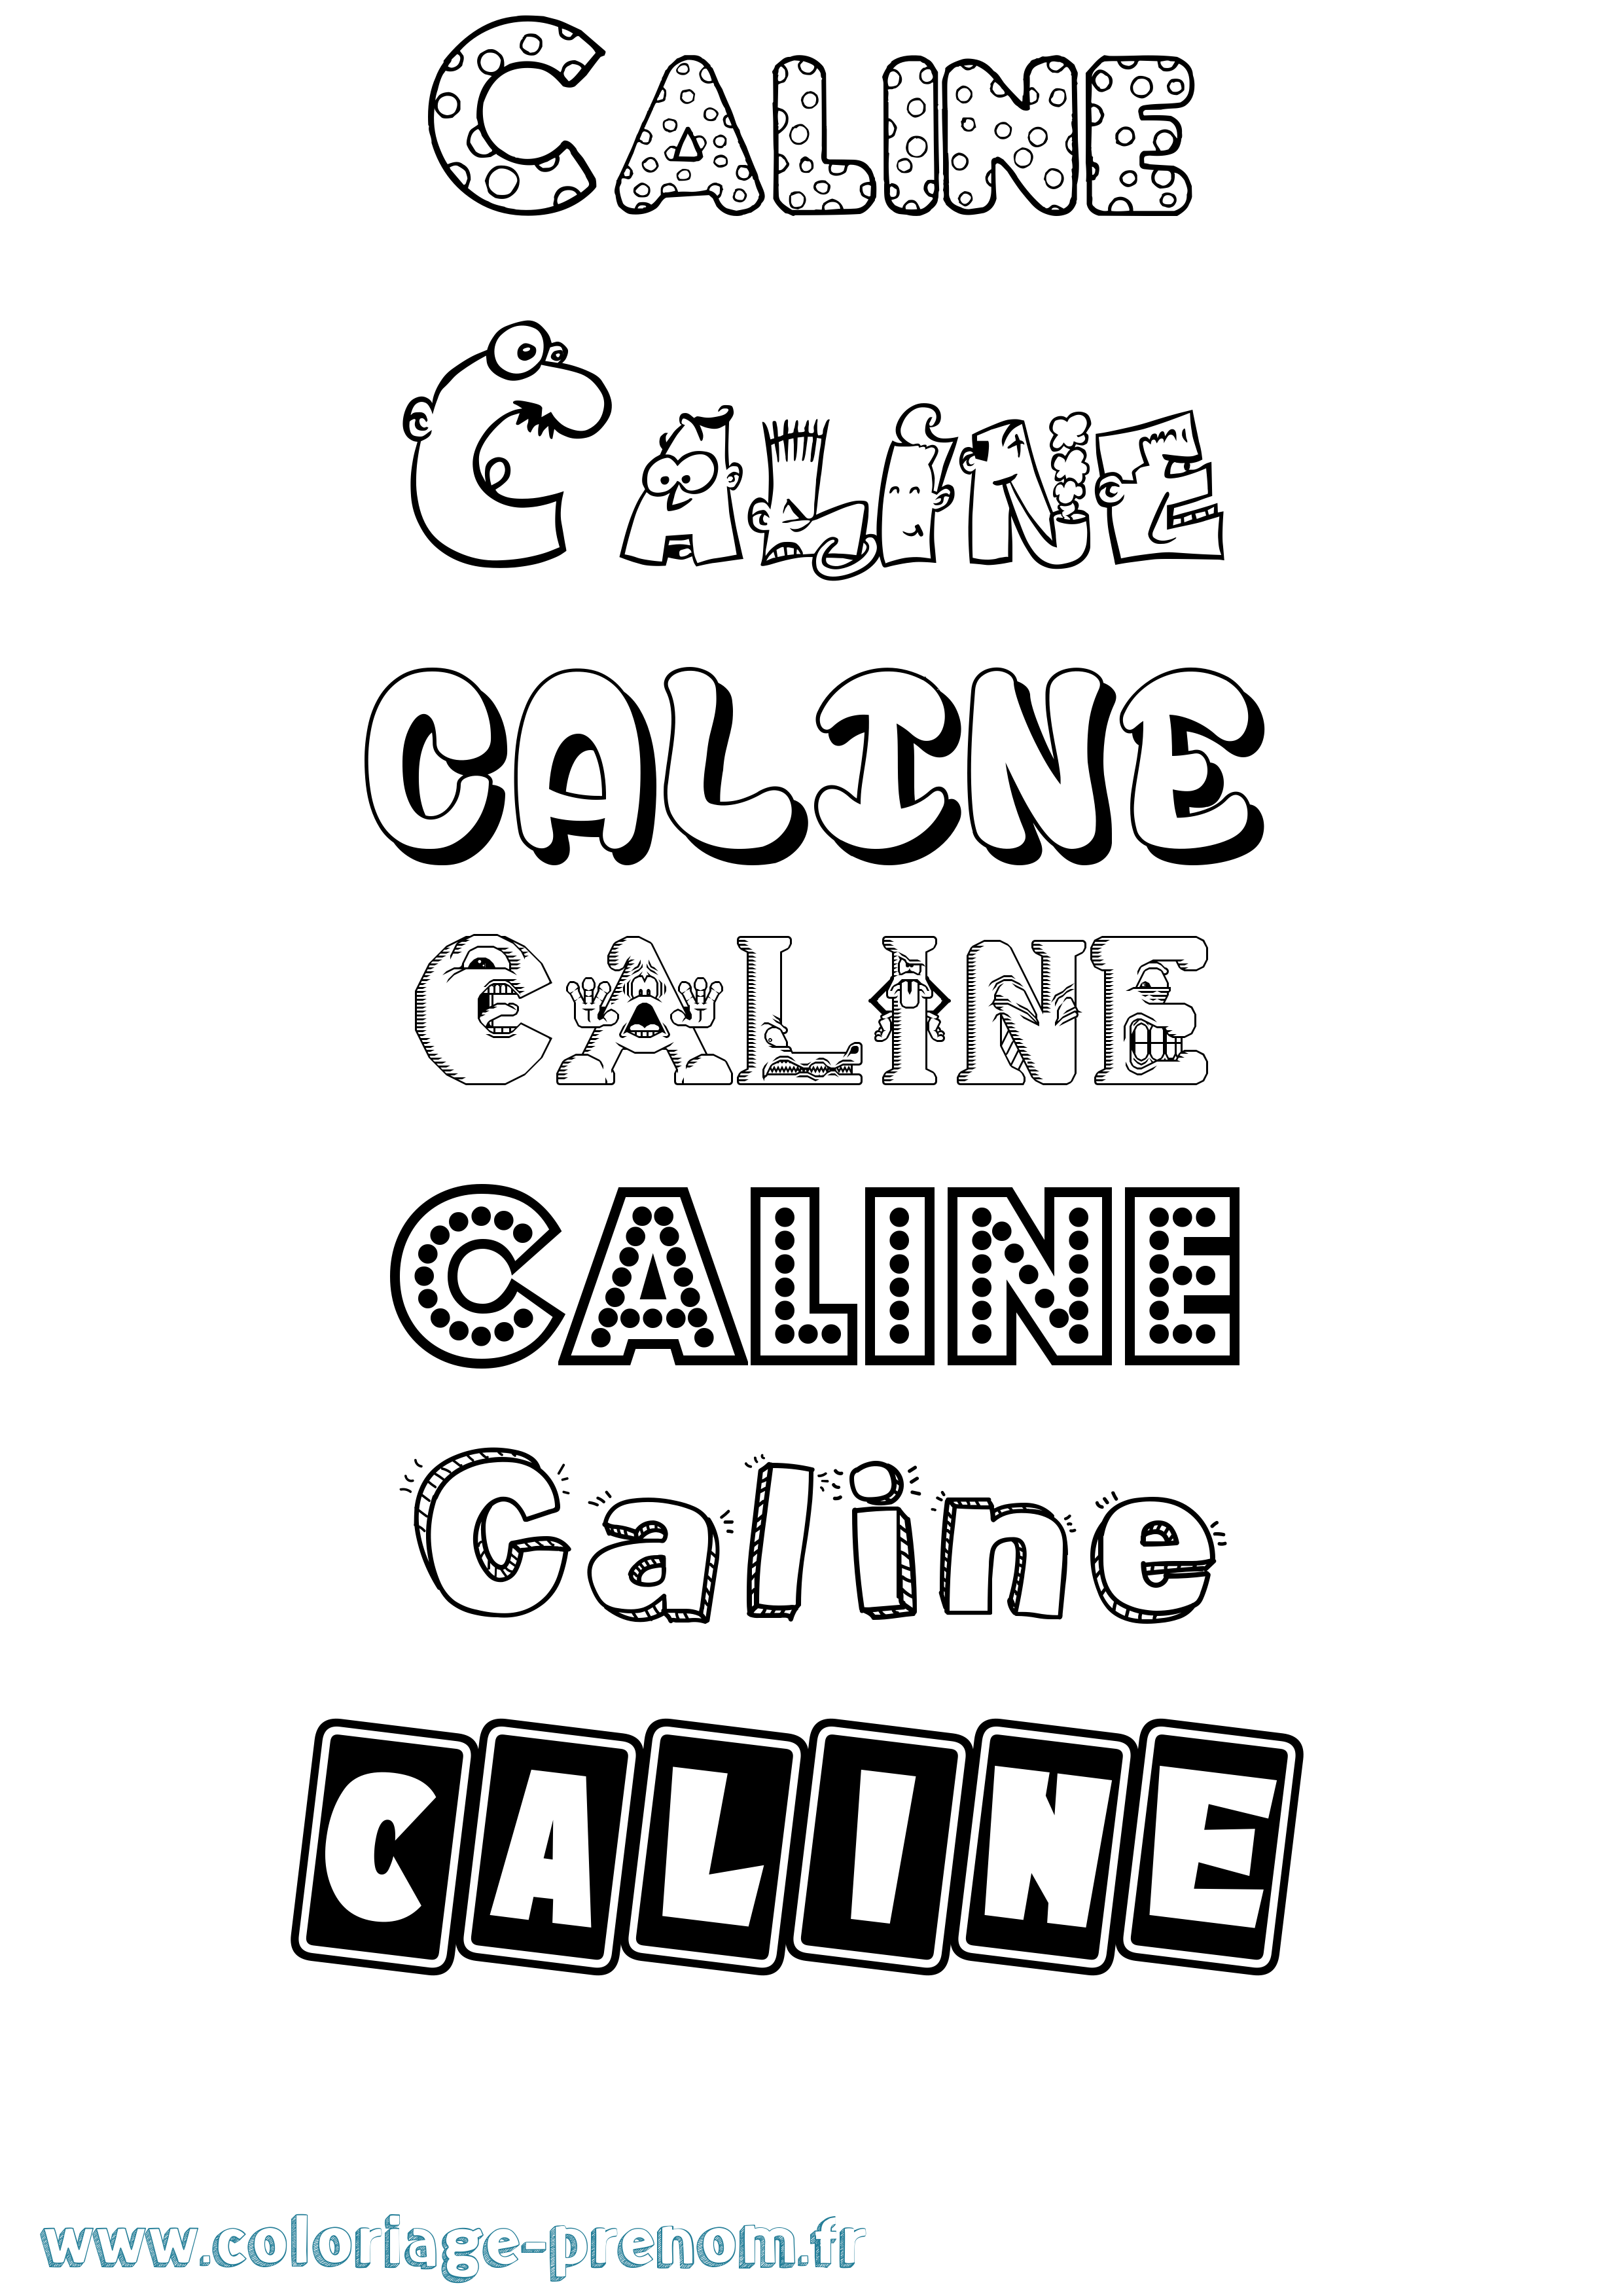 Coloriage prénom Caline Fun